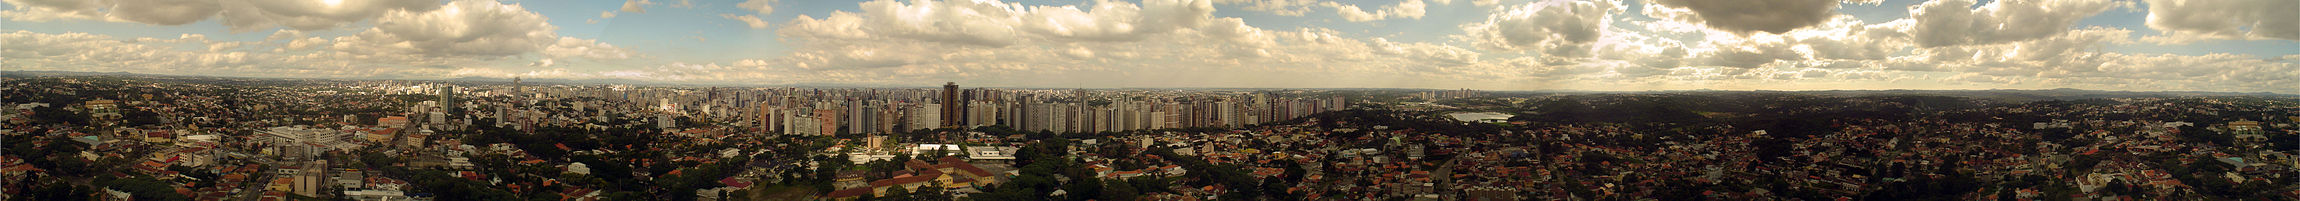 Curitiba, a maior cidade do sul do Brasil.